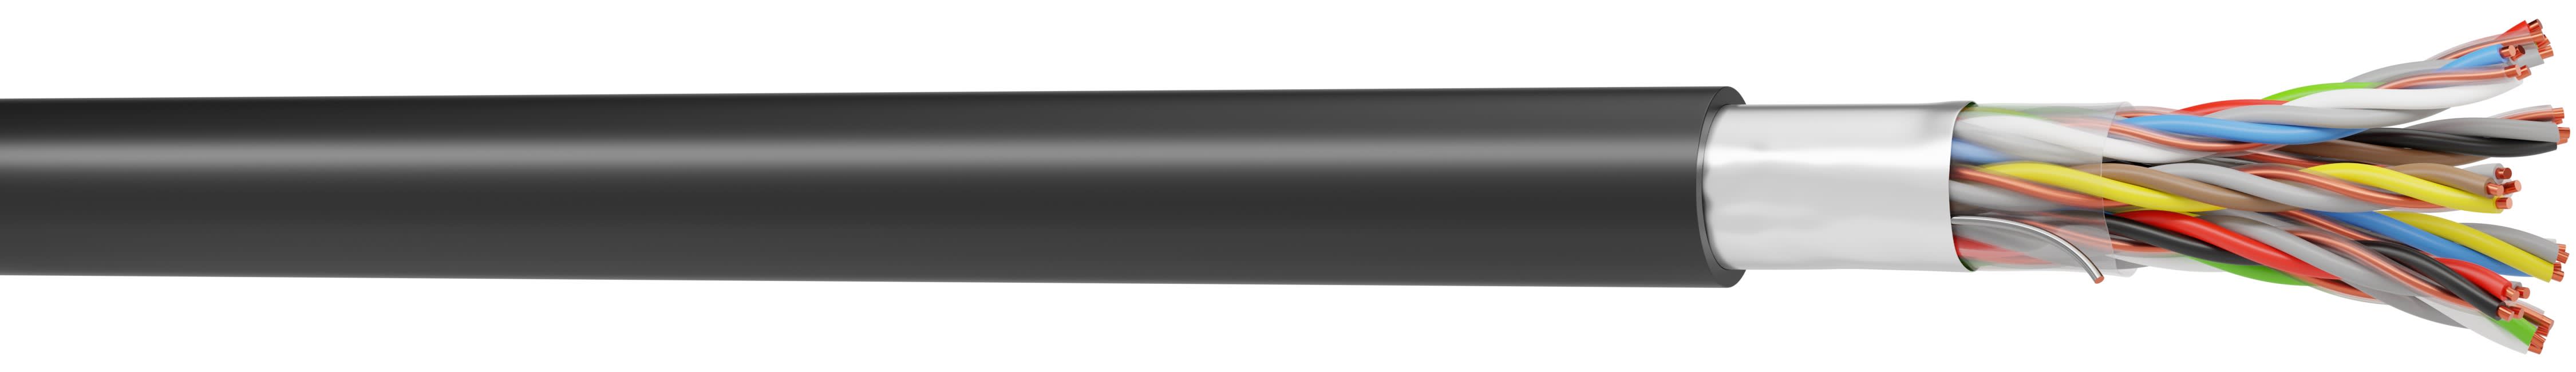 CAE Data - Câble téléphonique série 89 rigide avec écran 8 paires 8/10